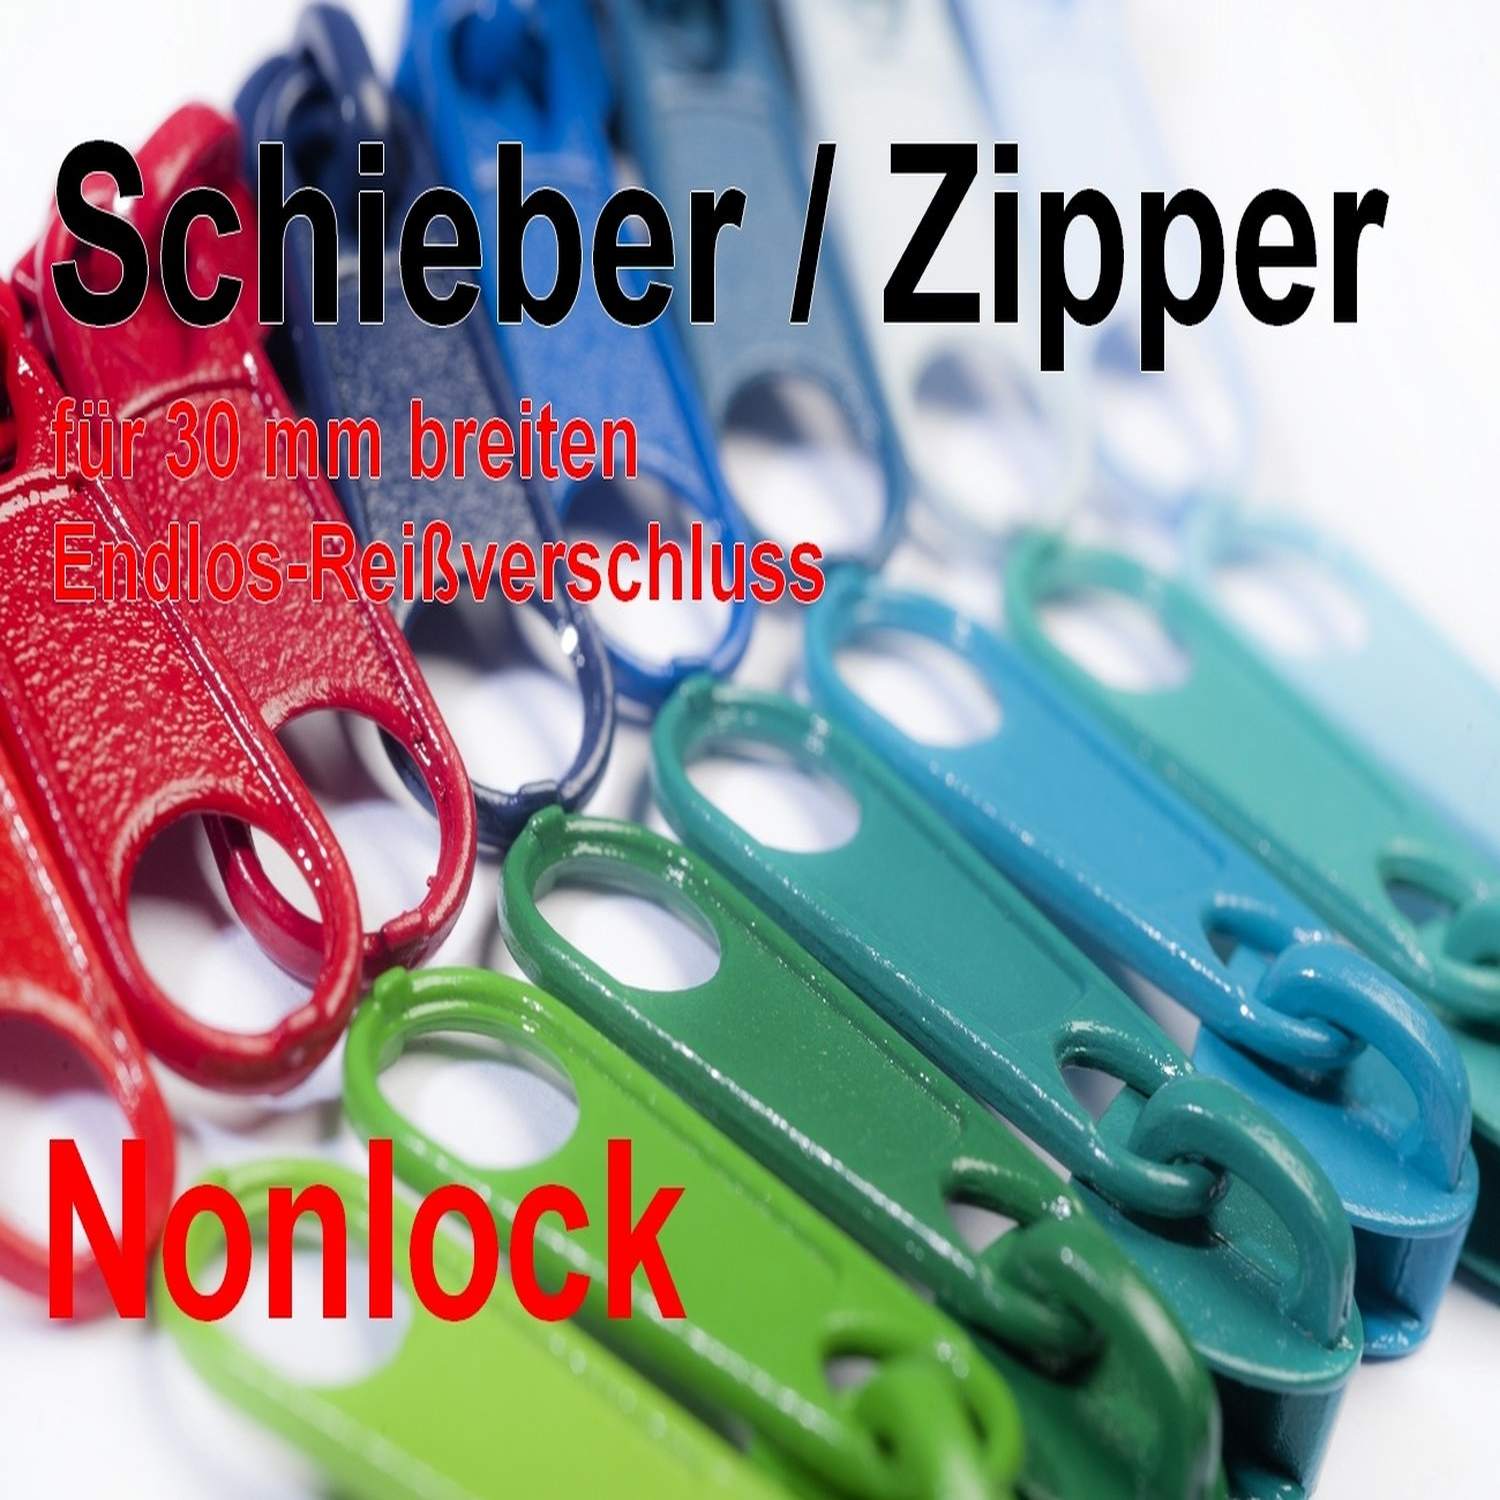 Nonlock Schieber für Endlosreißverschluss 5mm, 42 Farben